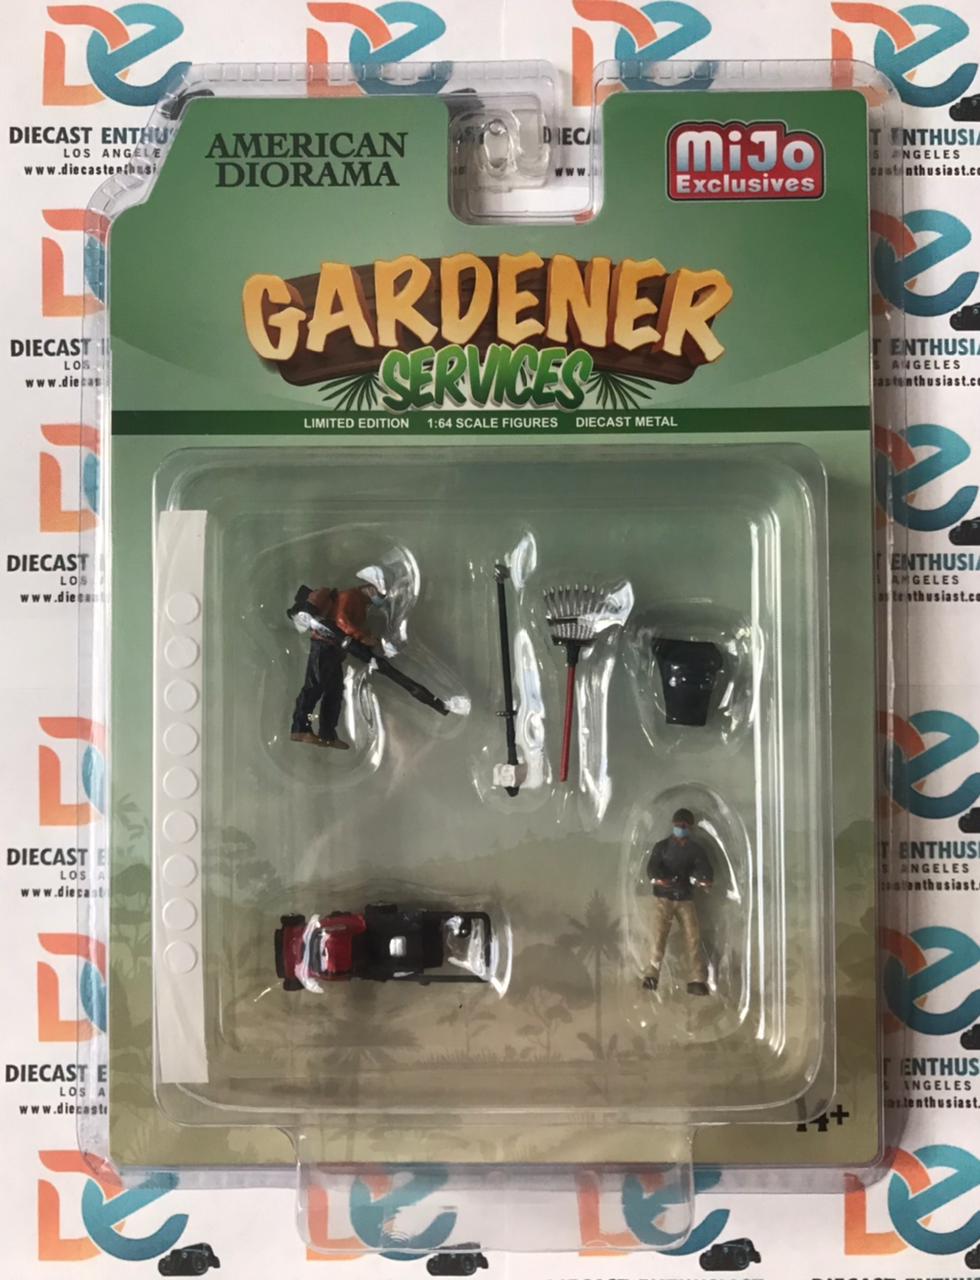 American Diorama Mijo Exclusives Gardener Figures Set 1:64